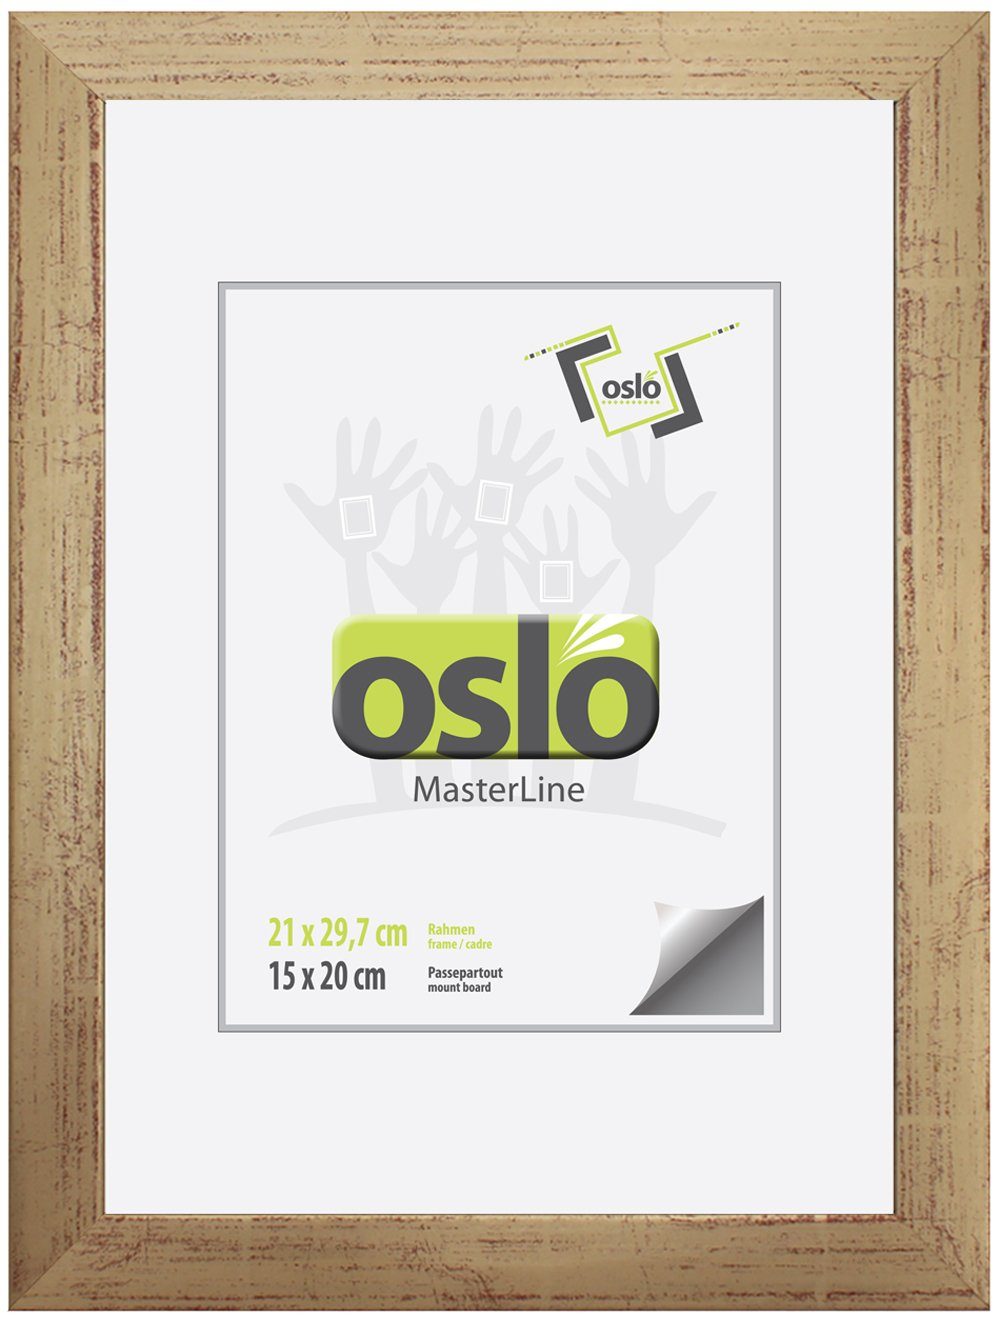 Oslo MasterLine Einzelrahmen Bilderrahmen 21 x 30 cm Urkundenformat DIN A4 exakt 21 x 29,7 cm, Urkundenrahmen Holz Farbe gold Echtglas stabiler Aufsteller